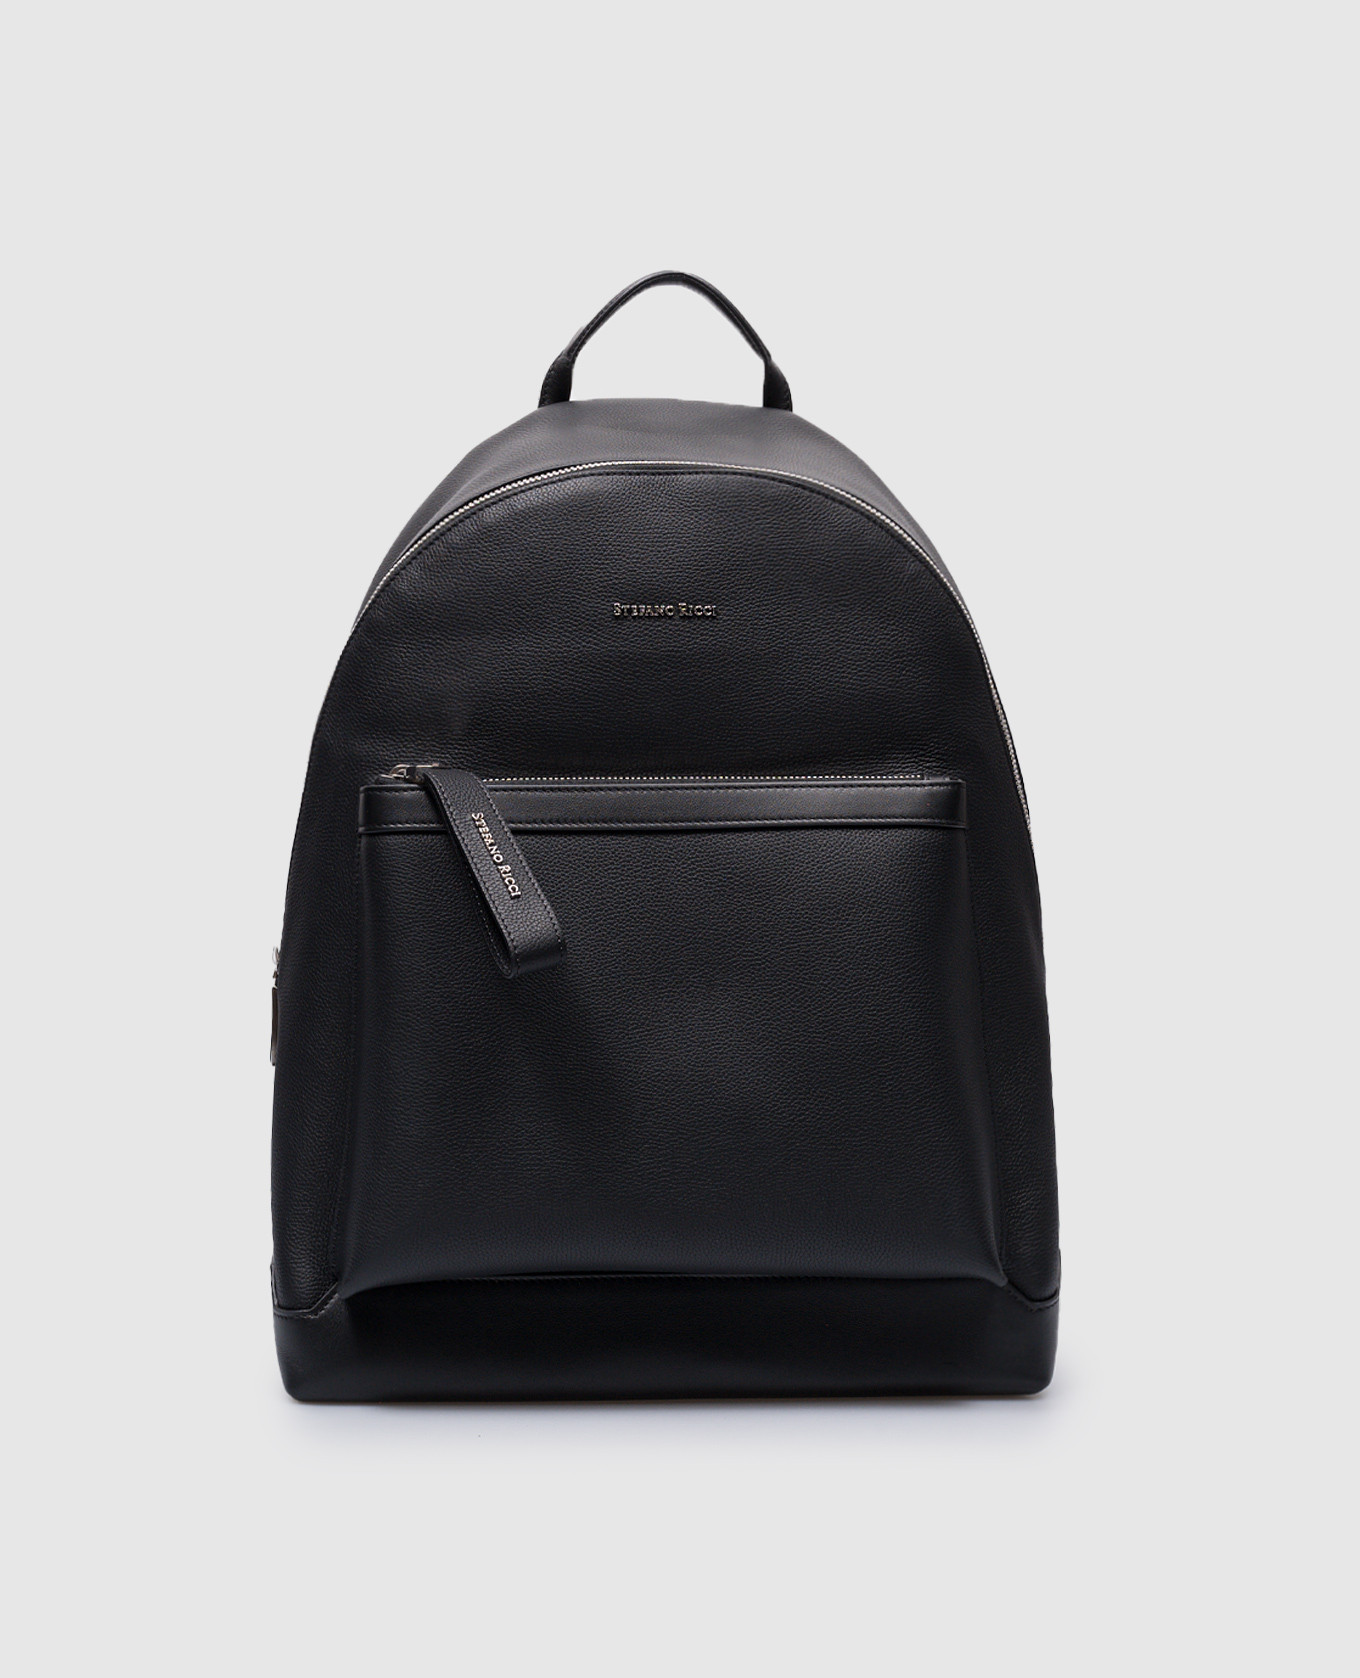 Черный кожаный рюкзак с металлическим логотипом.